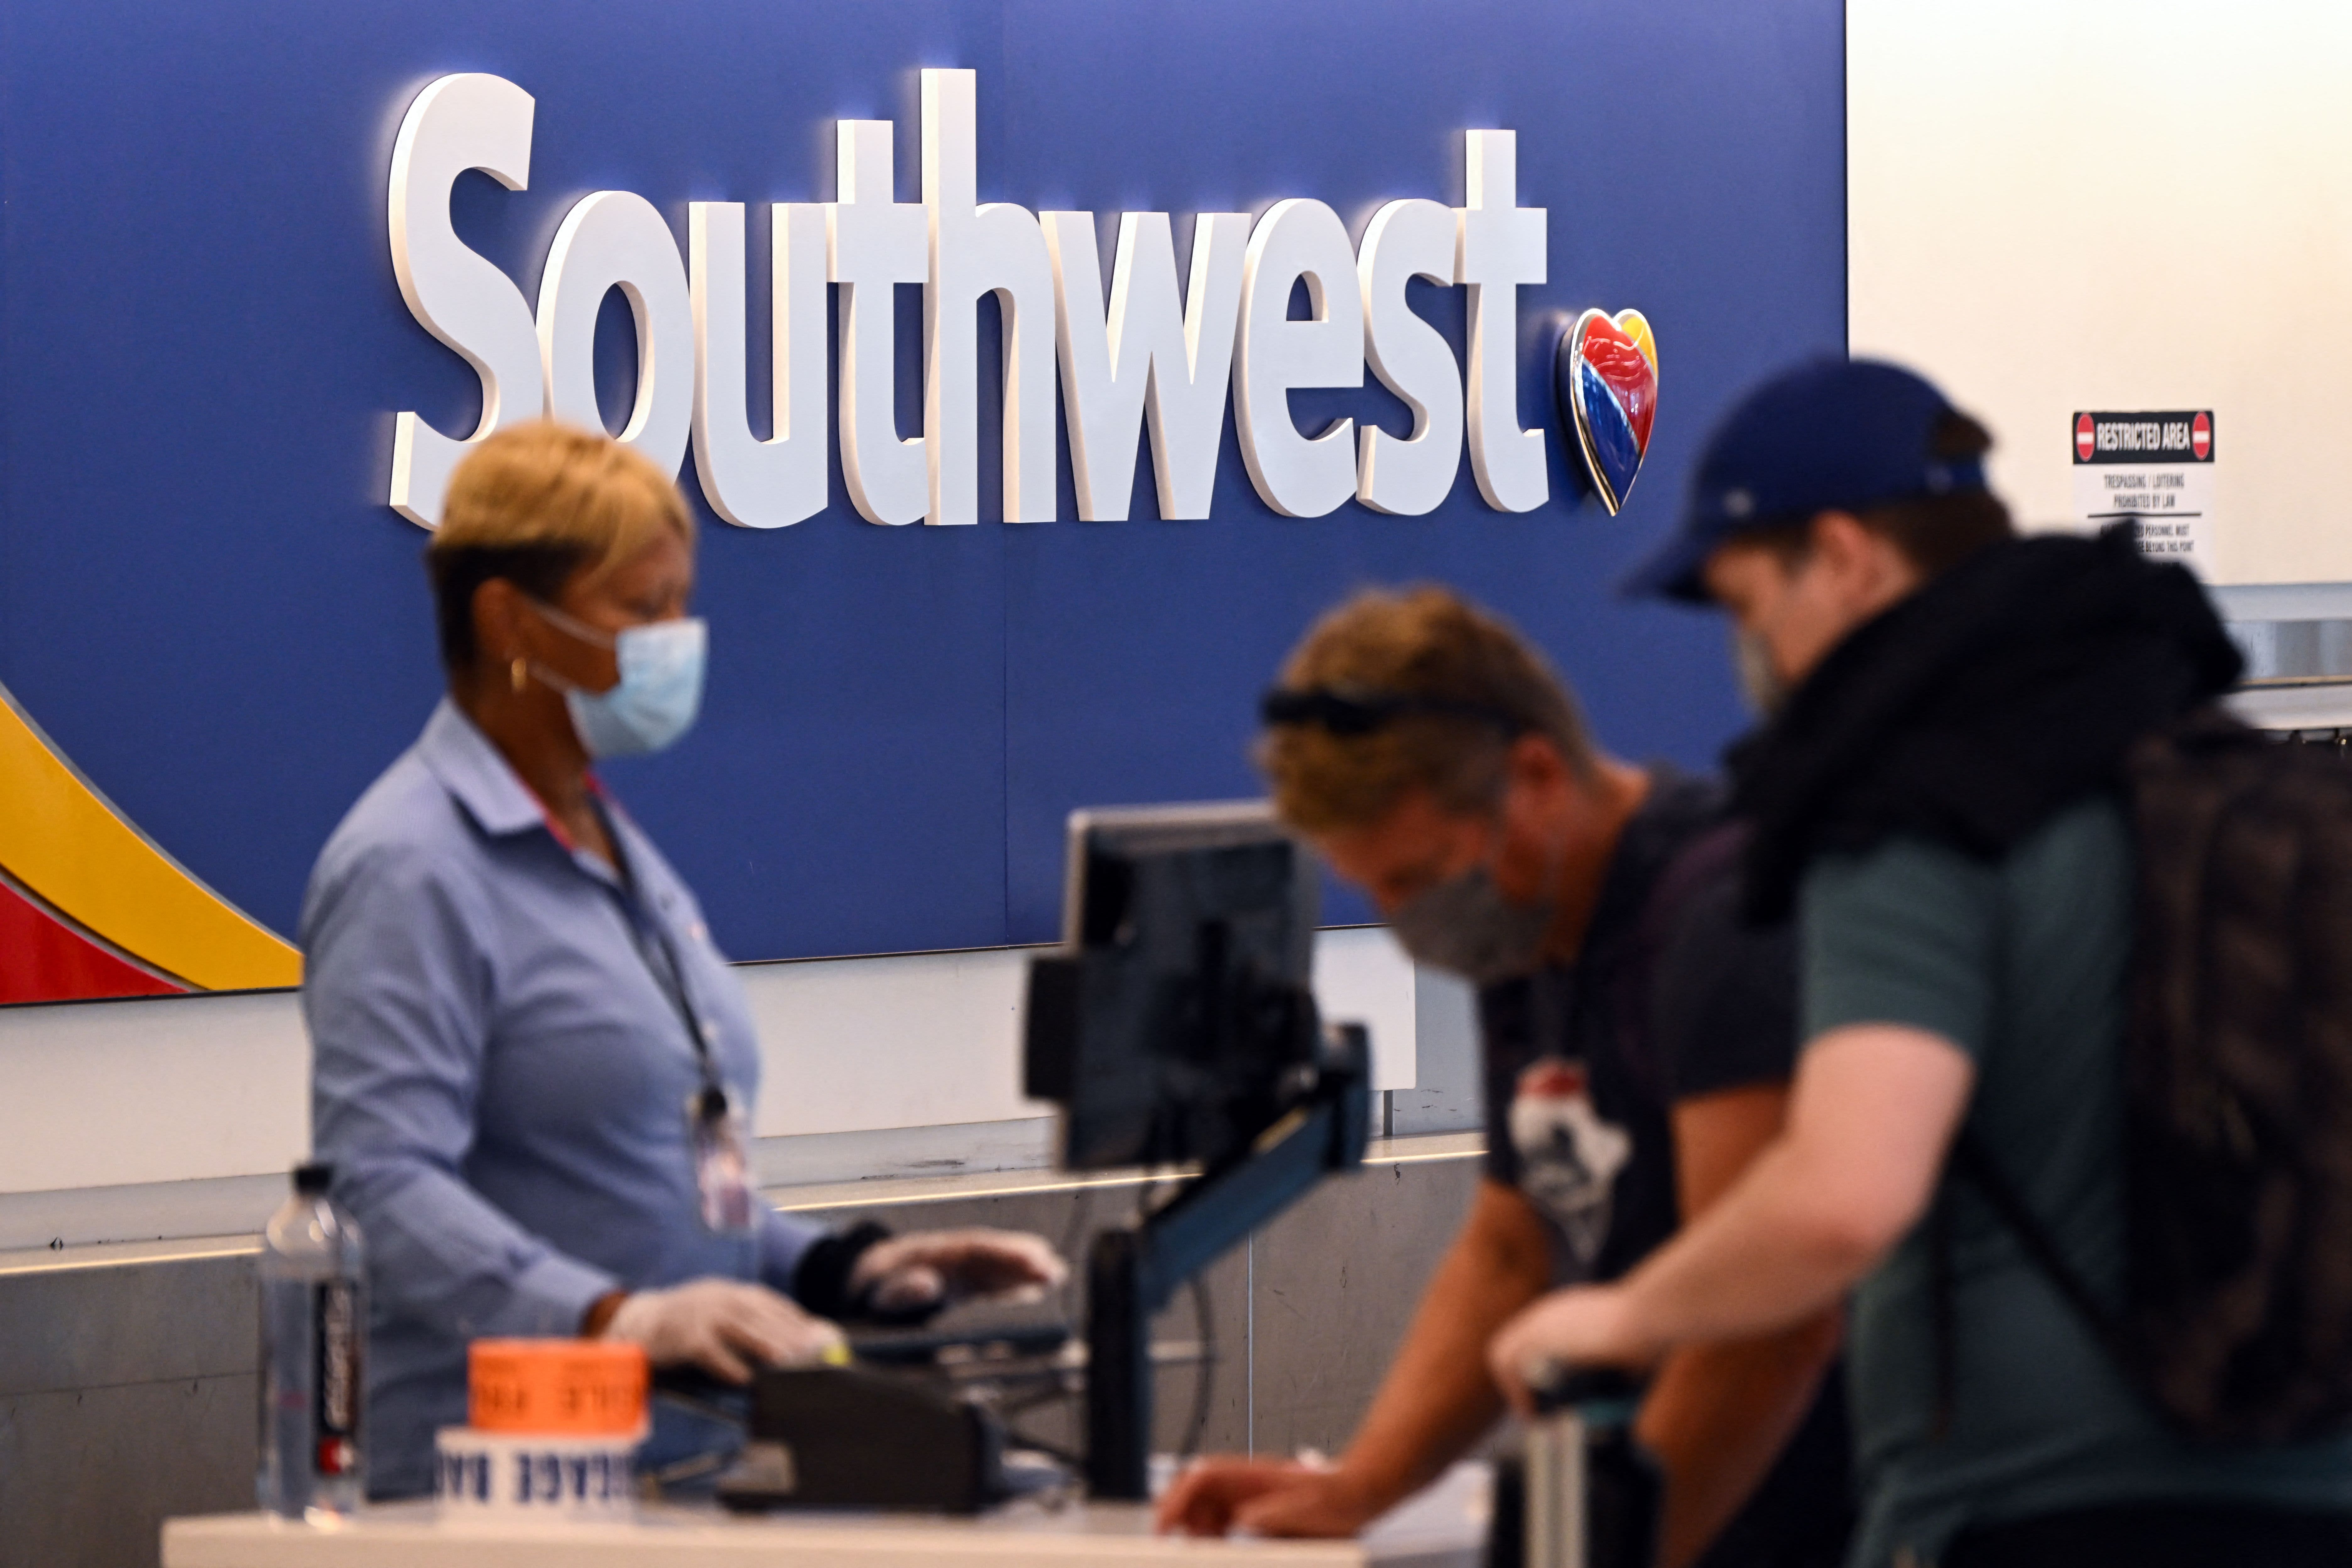 CFRA berkata Southwest Airlines kekal sebagai pembelian yang kukuh, walaupun terdapat kegawatan baru-baru ini untuk pelancong